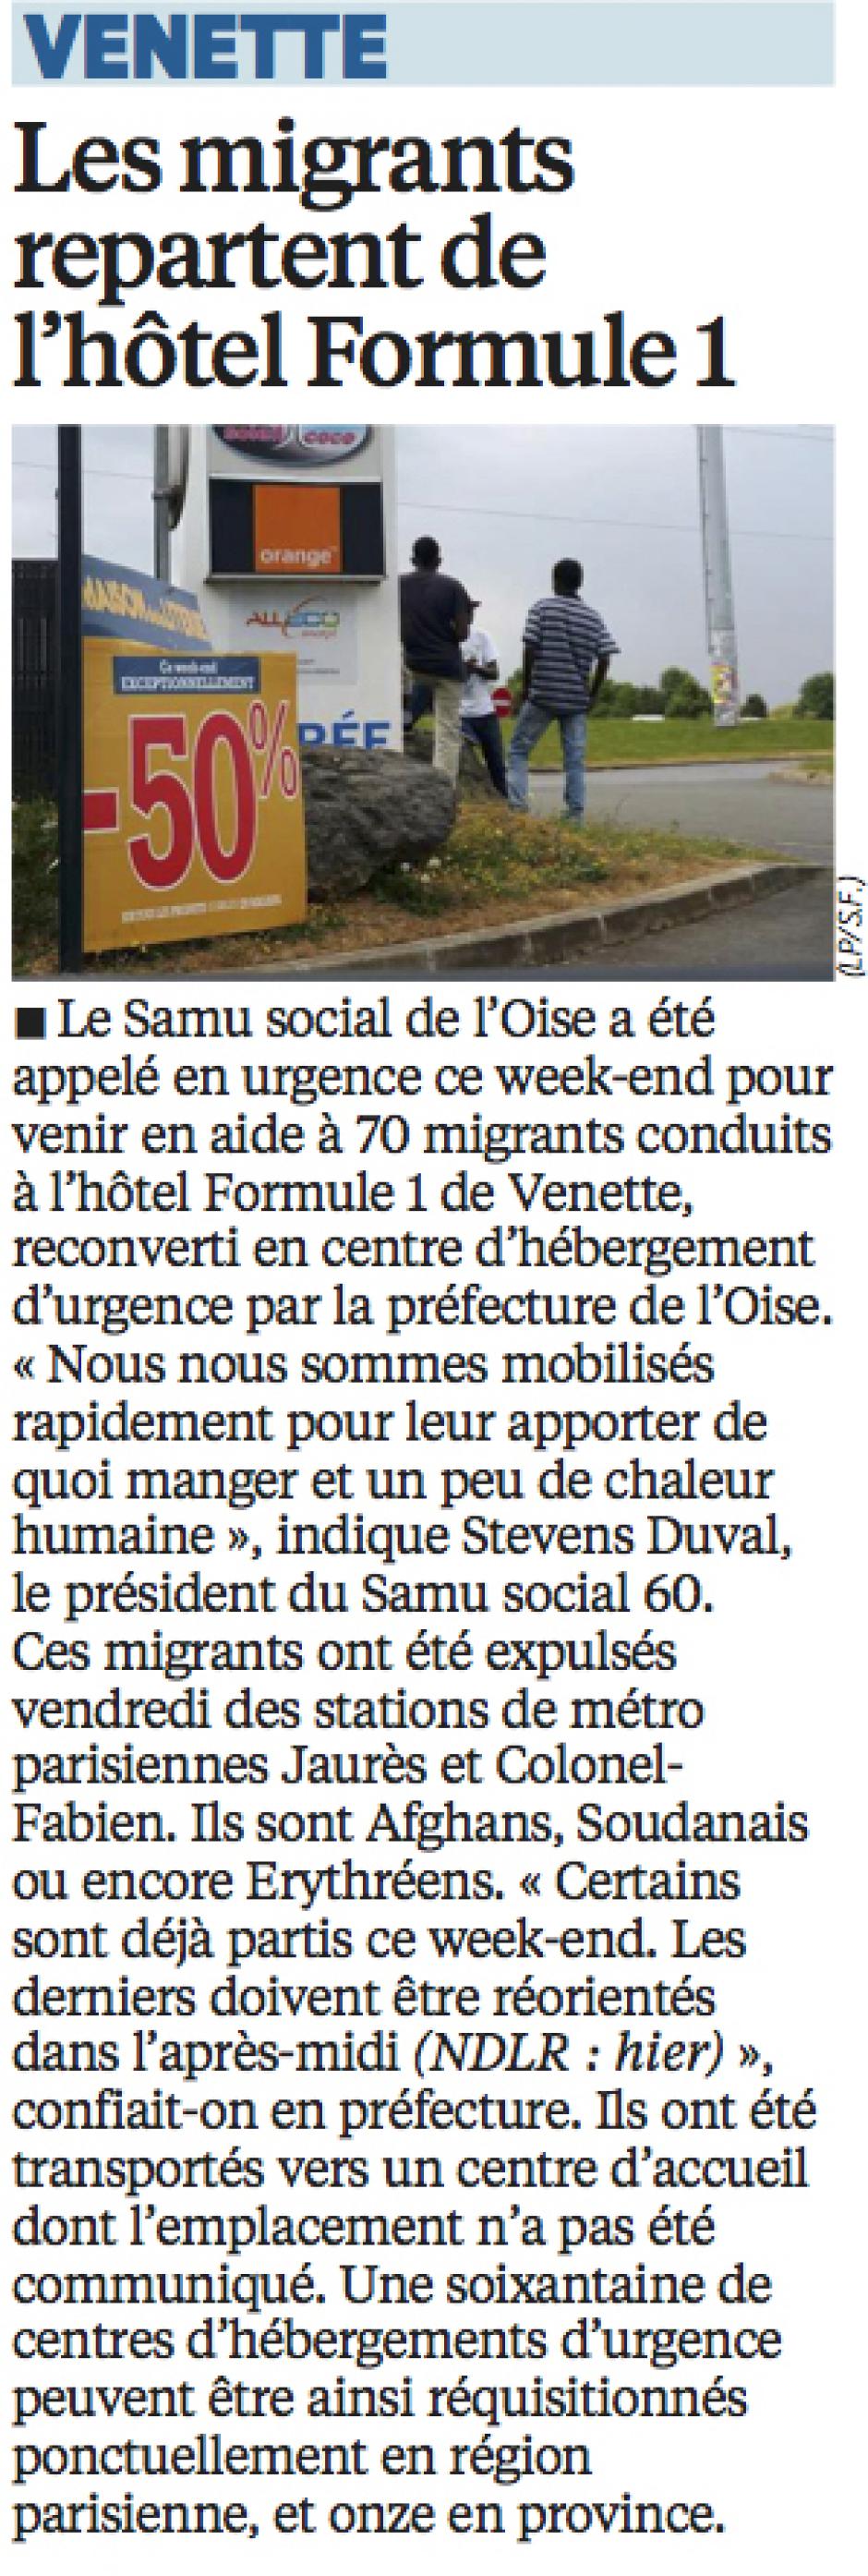 20160726-LeP-Venette-Les migrants repartent de l'hôtel